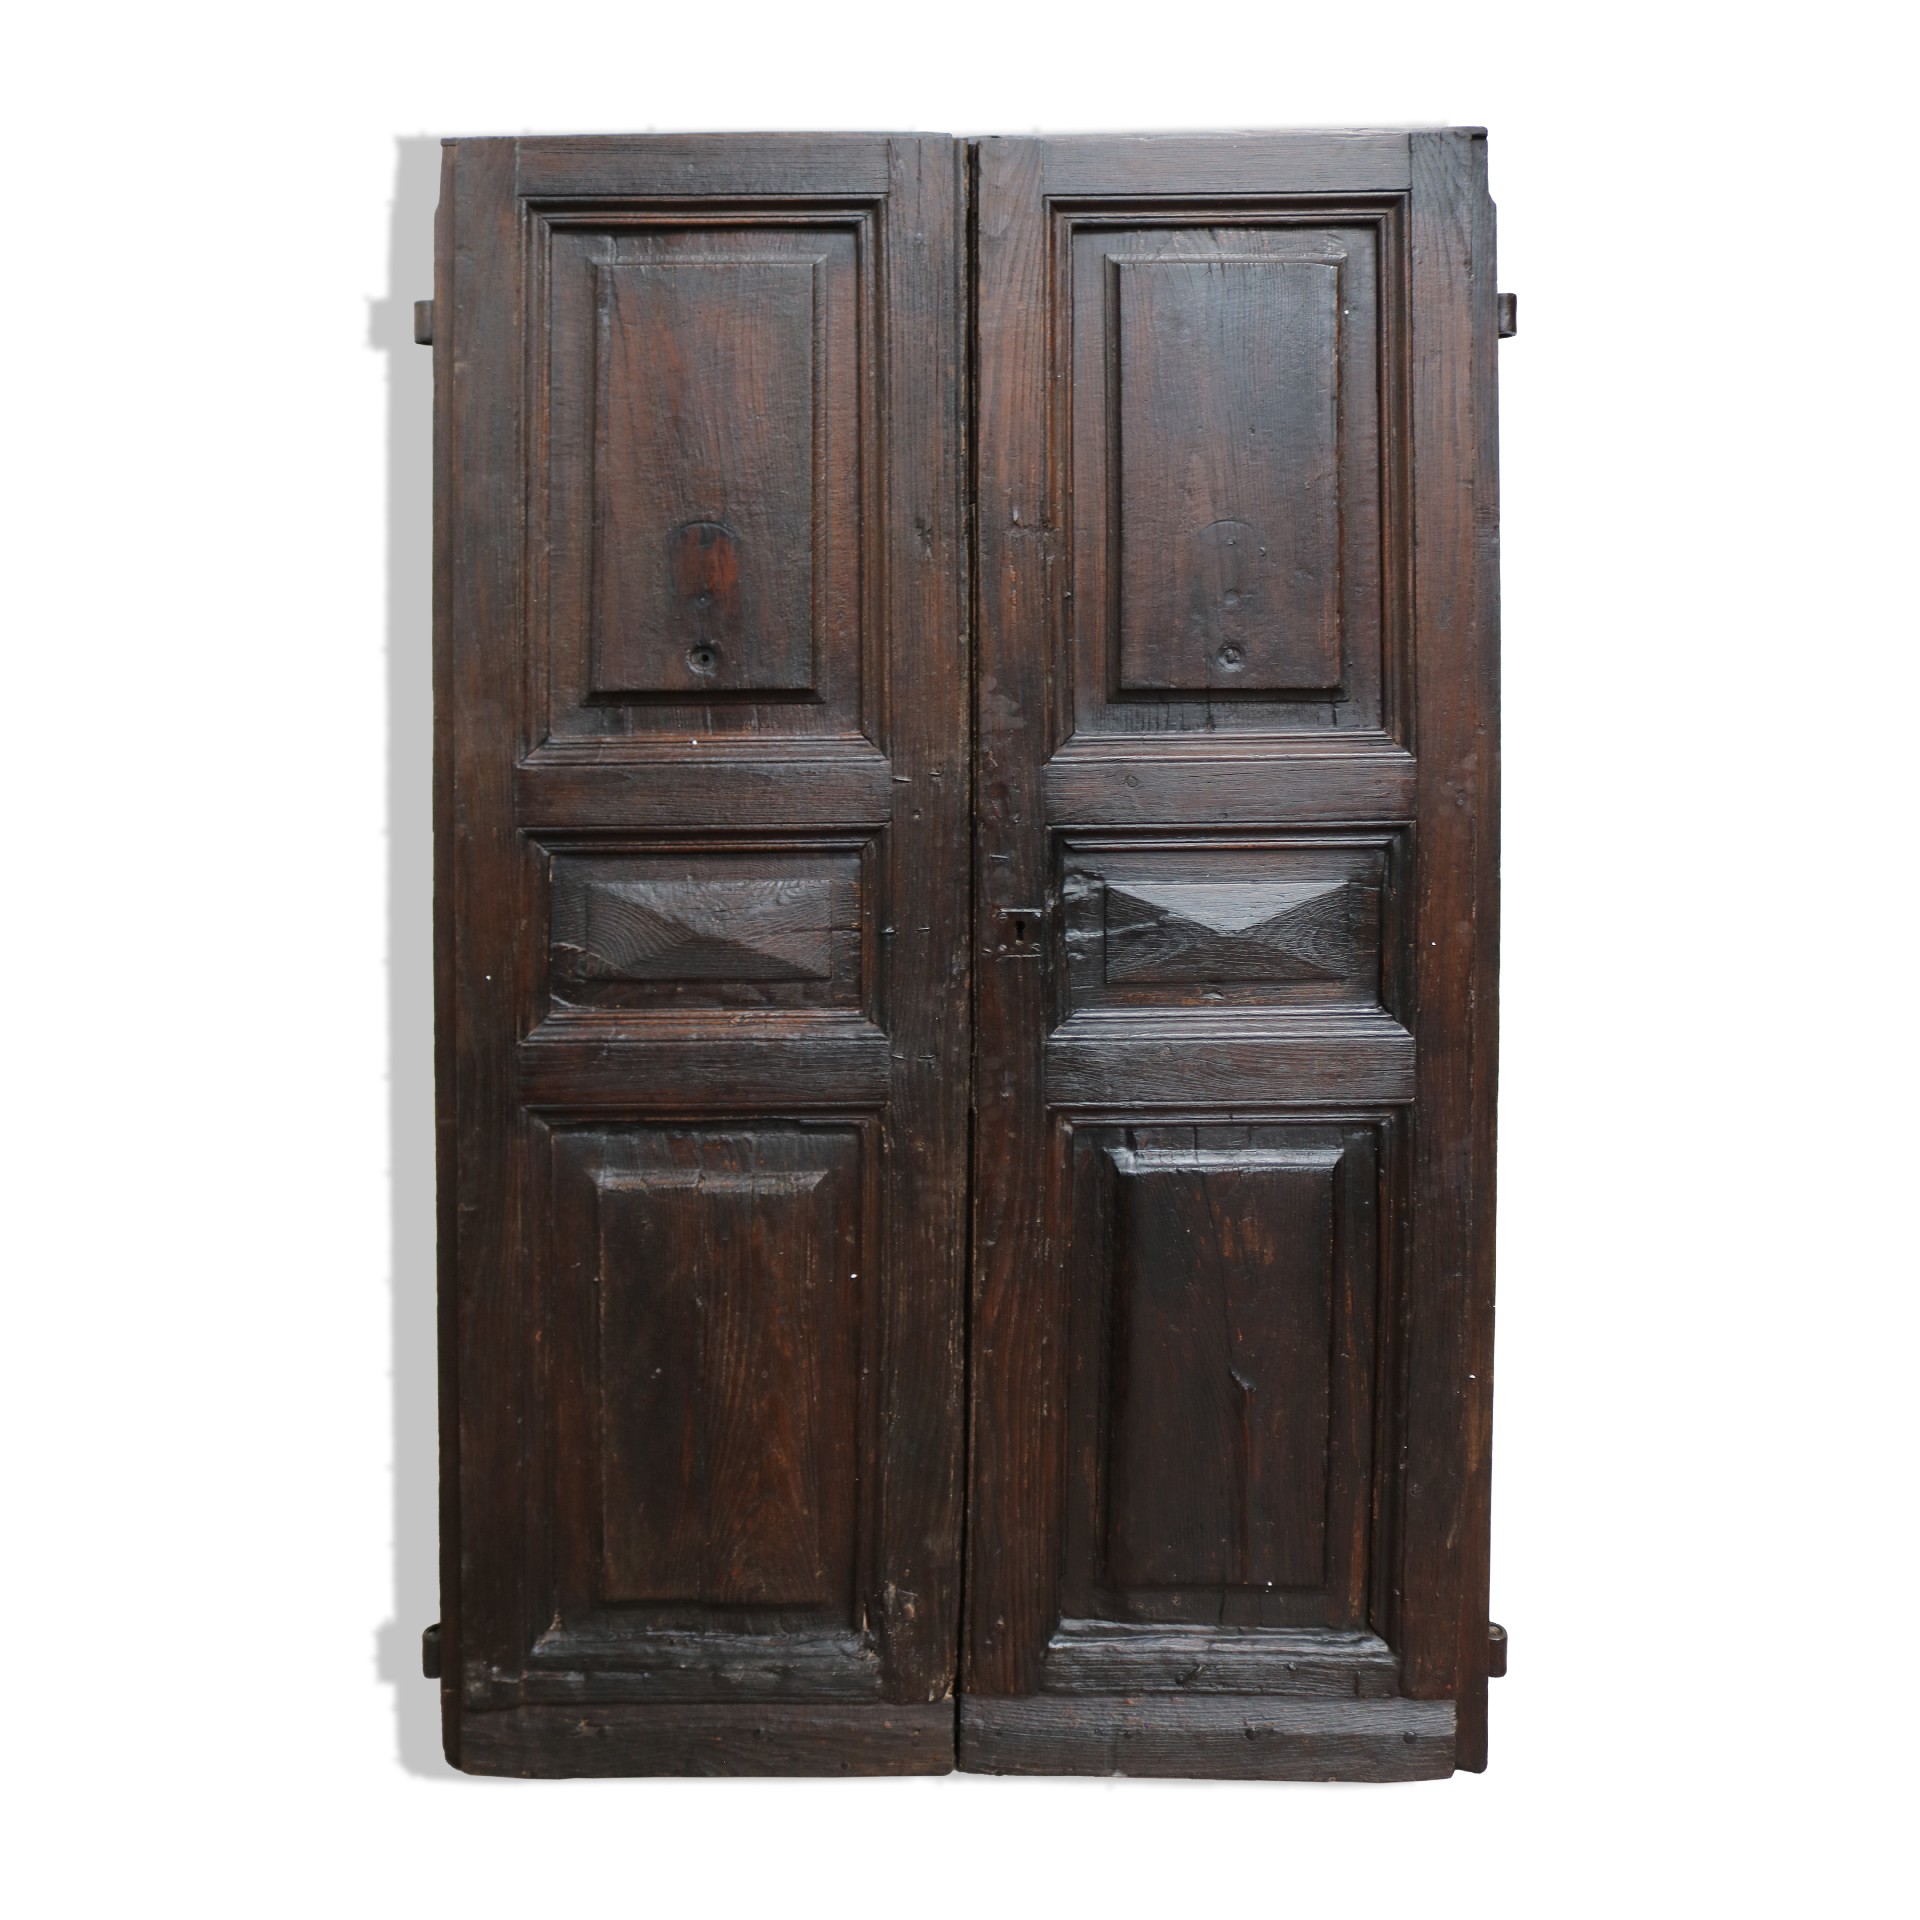 Porta antica in legno. - Porte Rare - Porte Antiche - Prodotti - Antichità Fiorillo